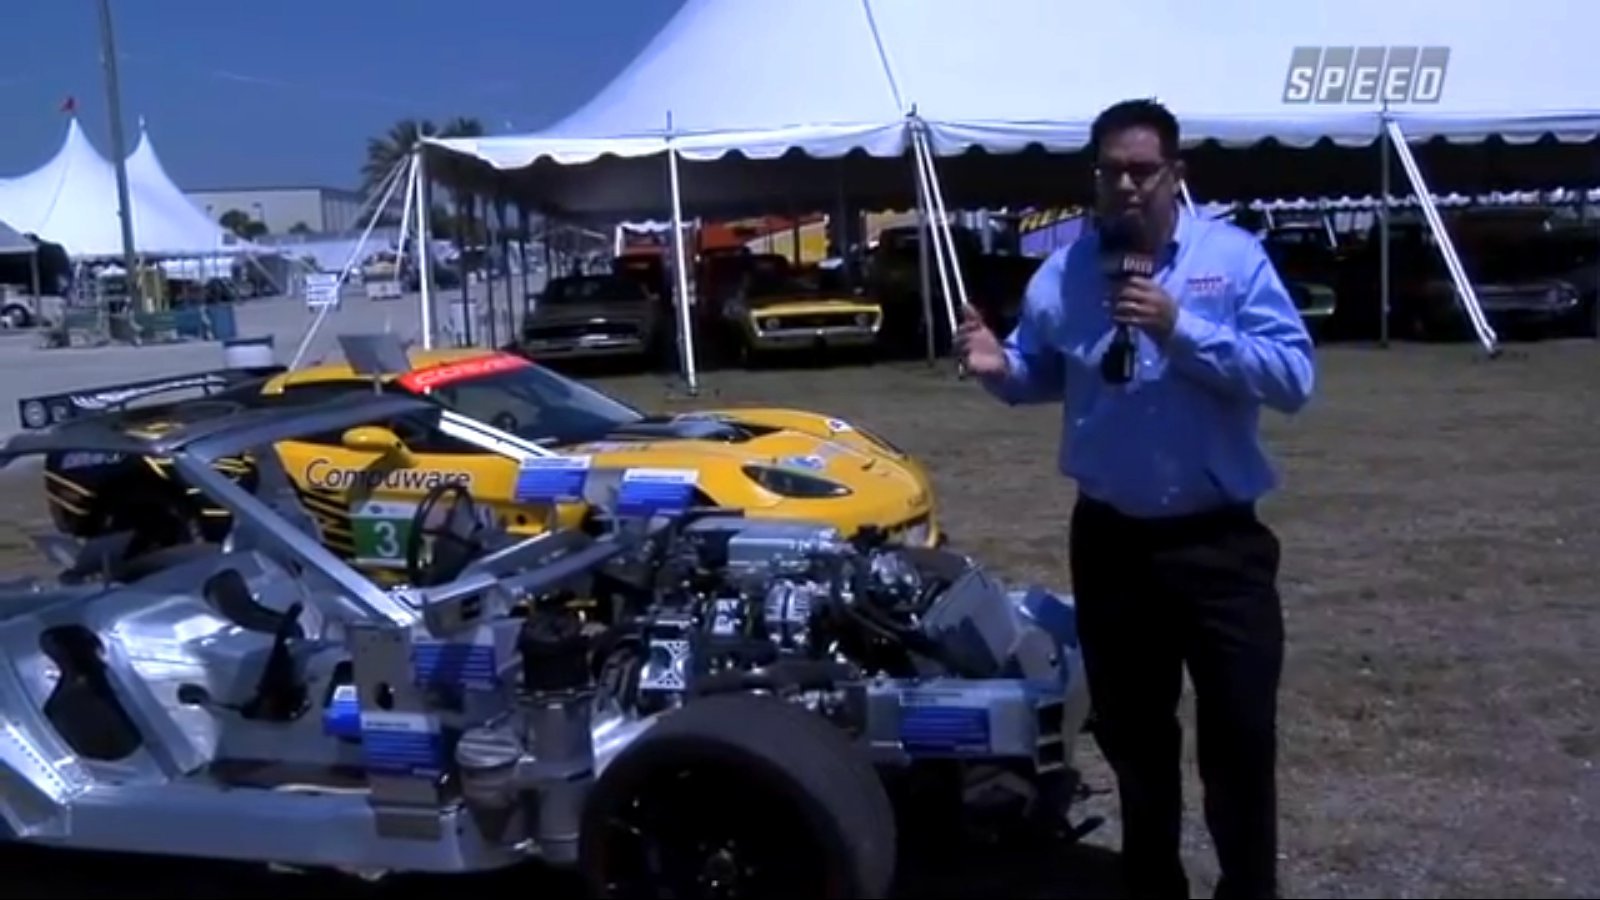 Video: Corvette ZR1 Full-Car Cutaway On Display at Barrett-Jackson